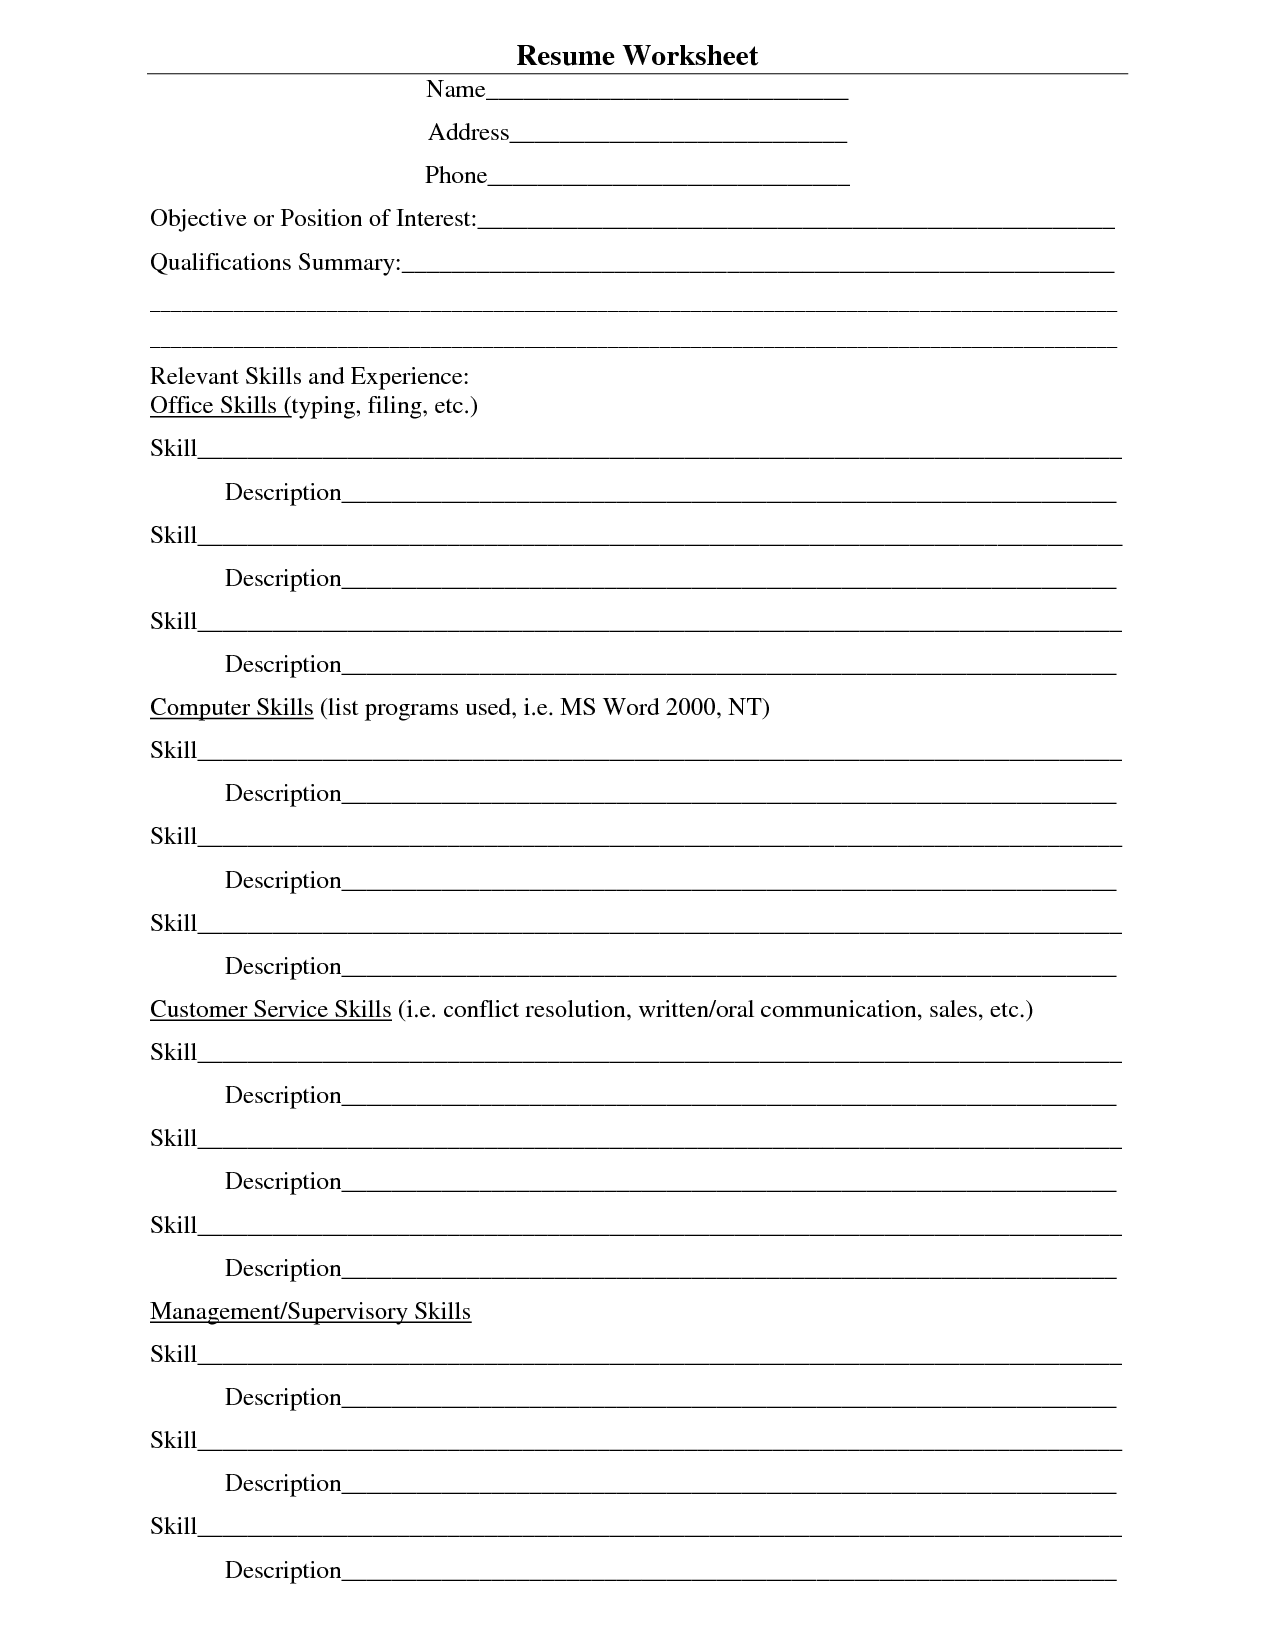 High School Resume Template Worksheet Image